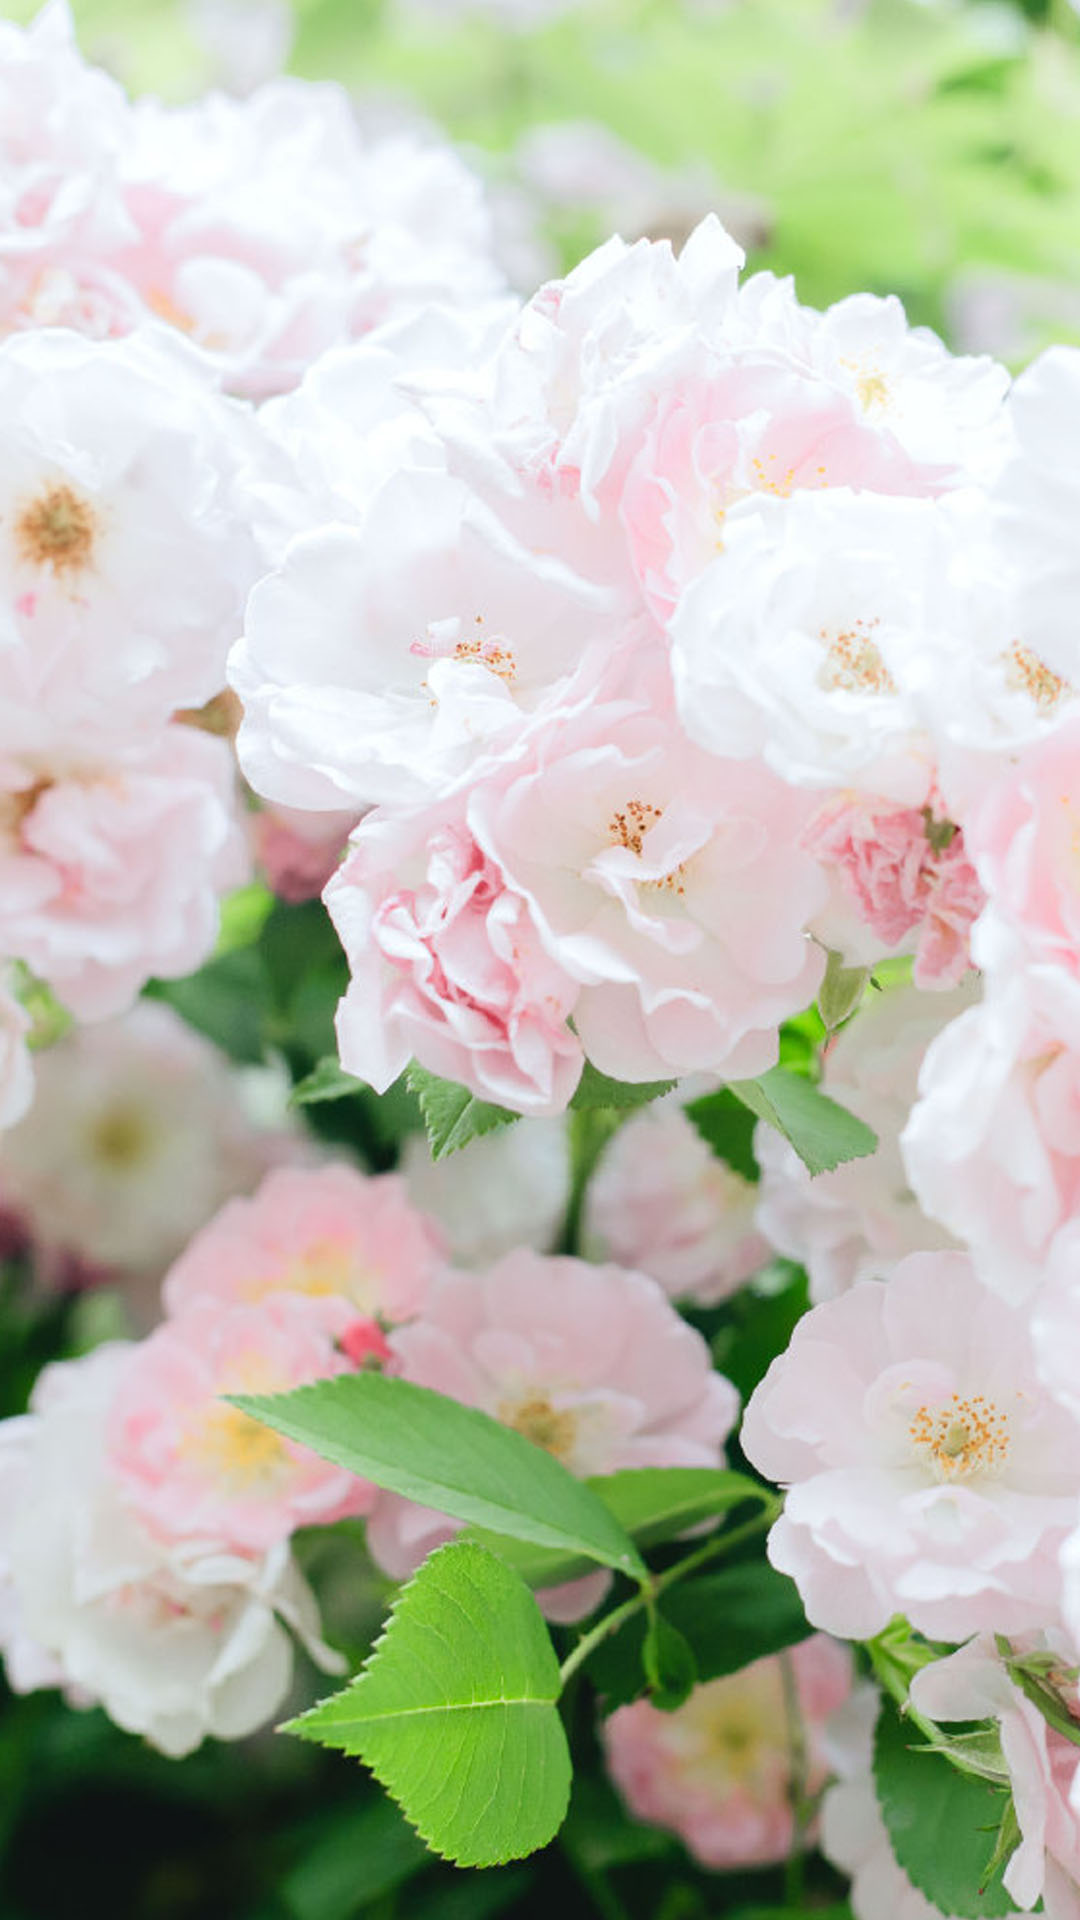 蔷薇花图片高清手机壁纸 Tt98图片网